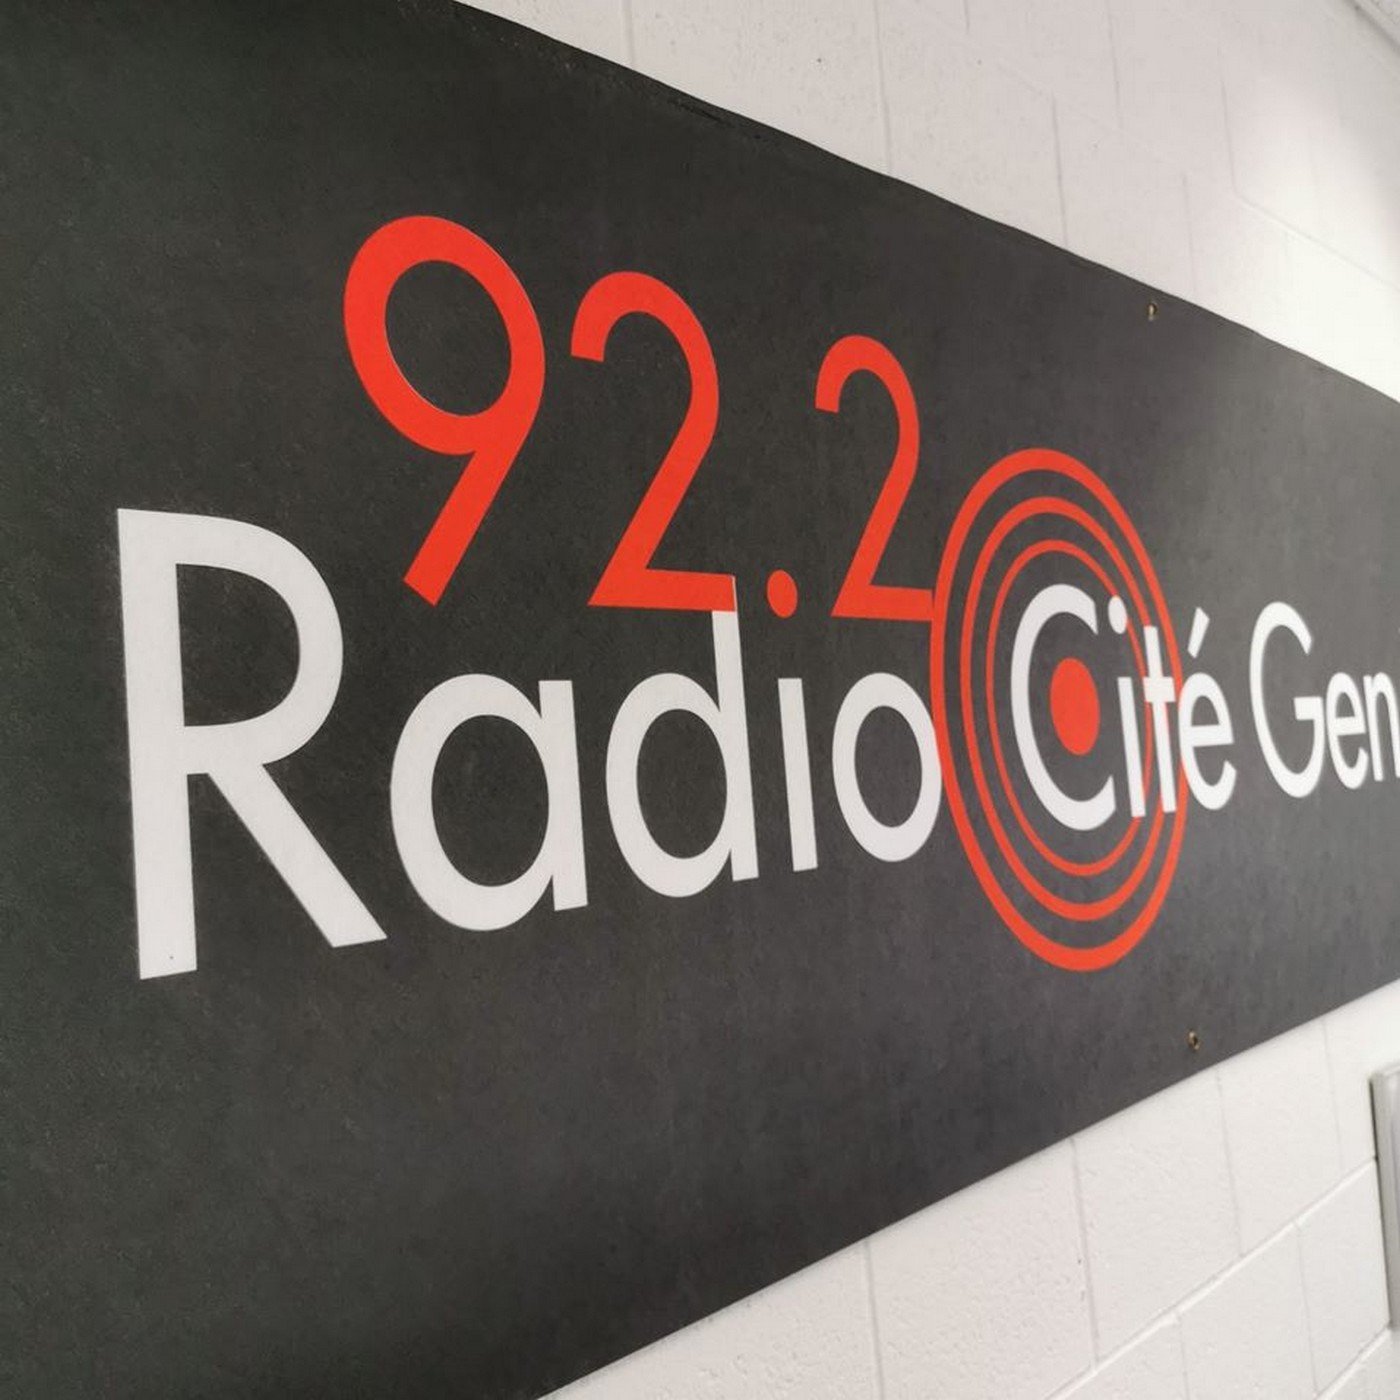 Image Interview for Radio Cité Genève